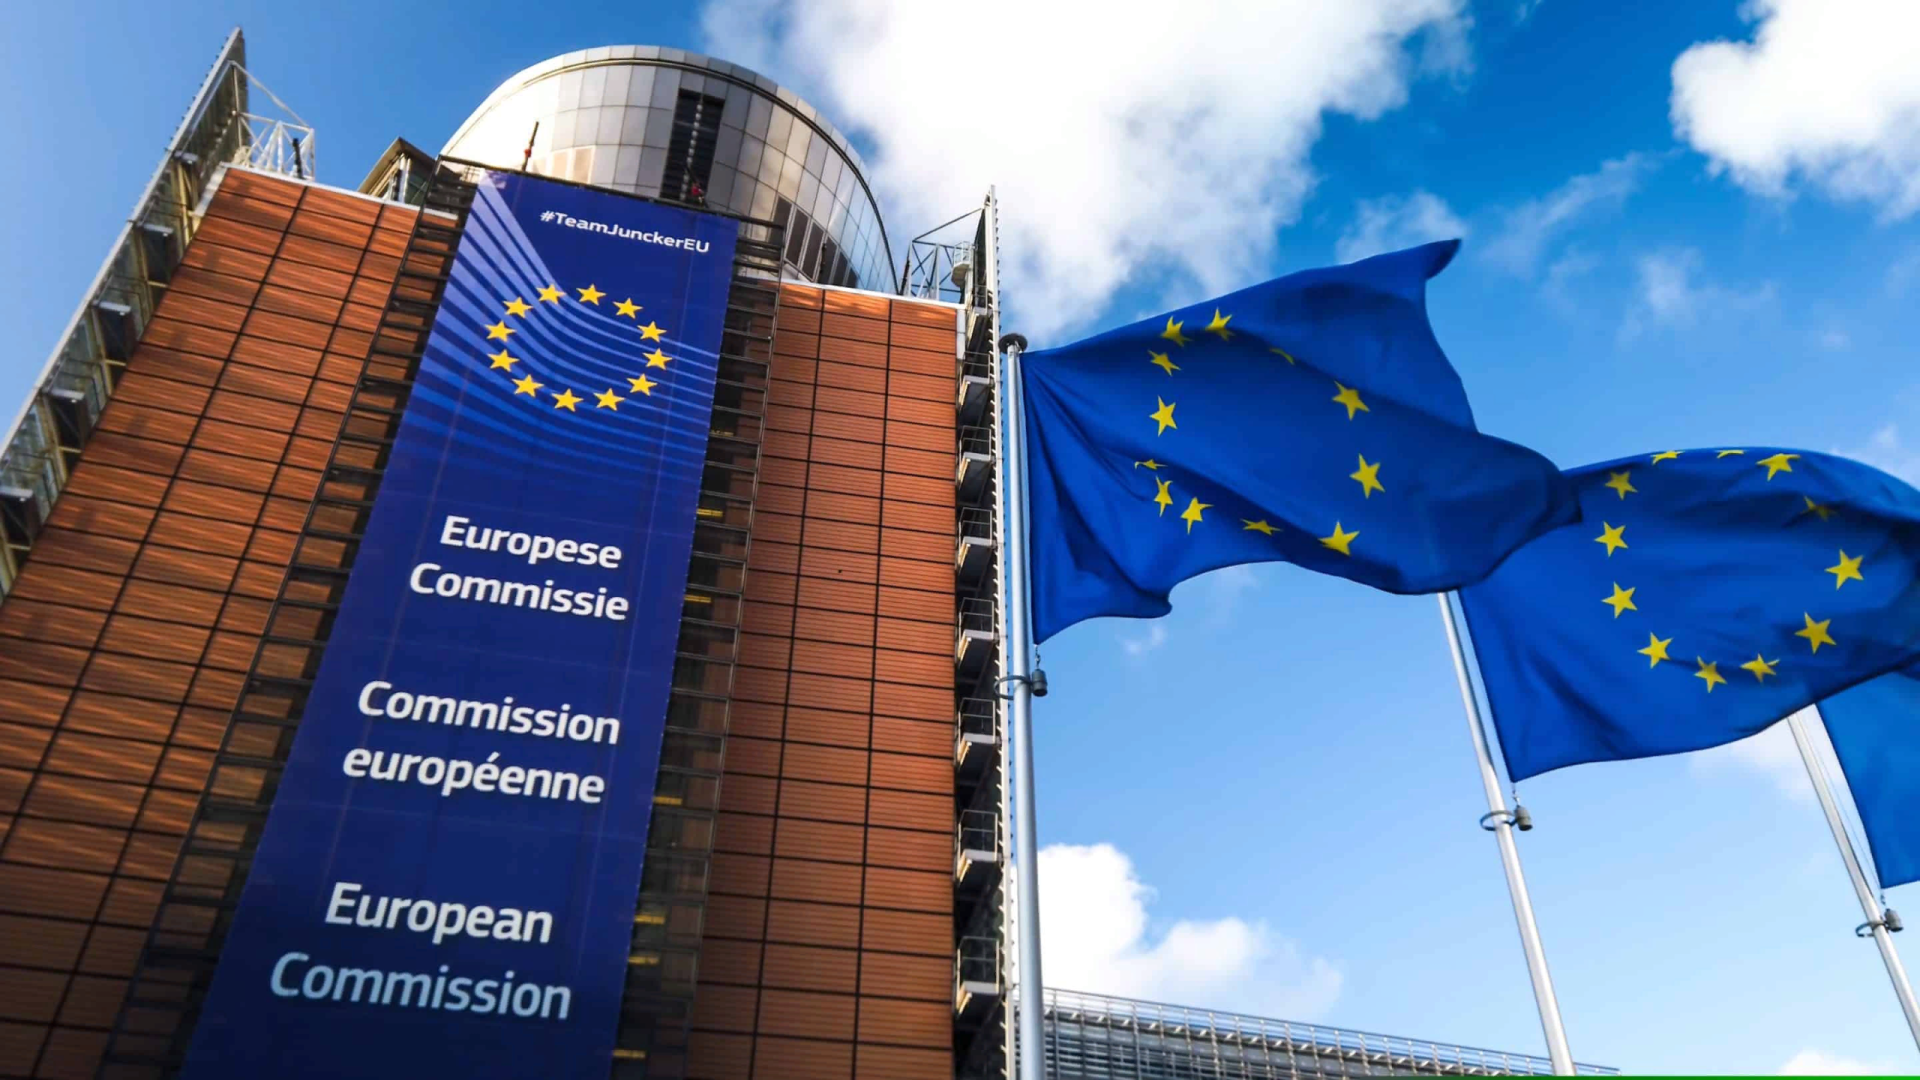 Еврокомиссия начала расследование в отношении AliExpress